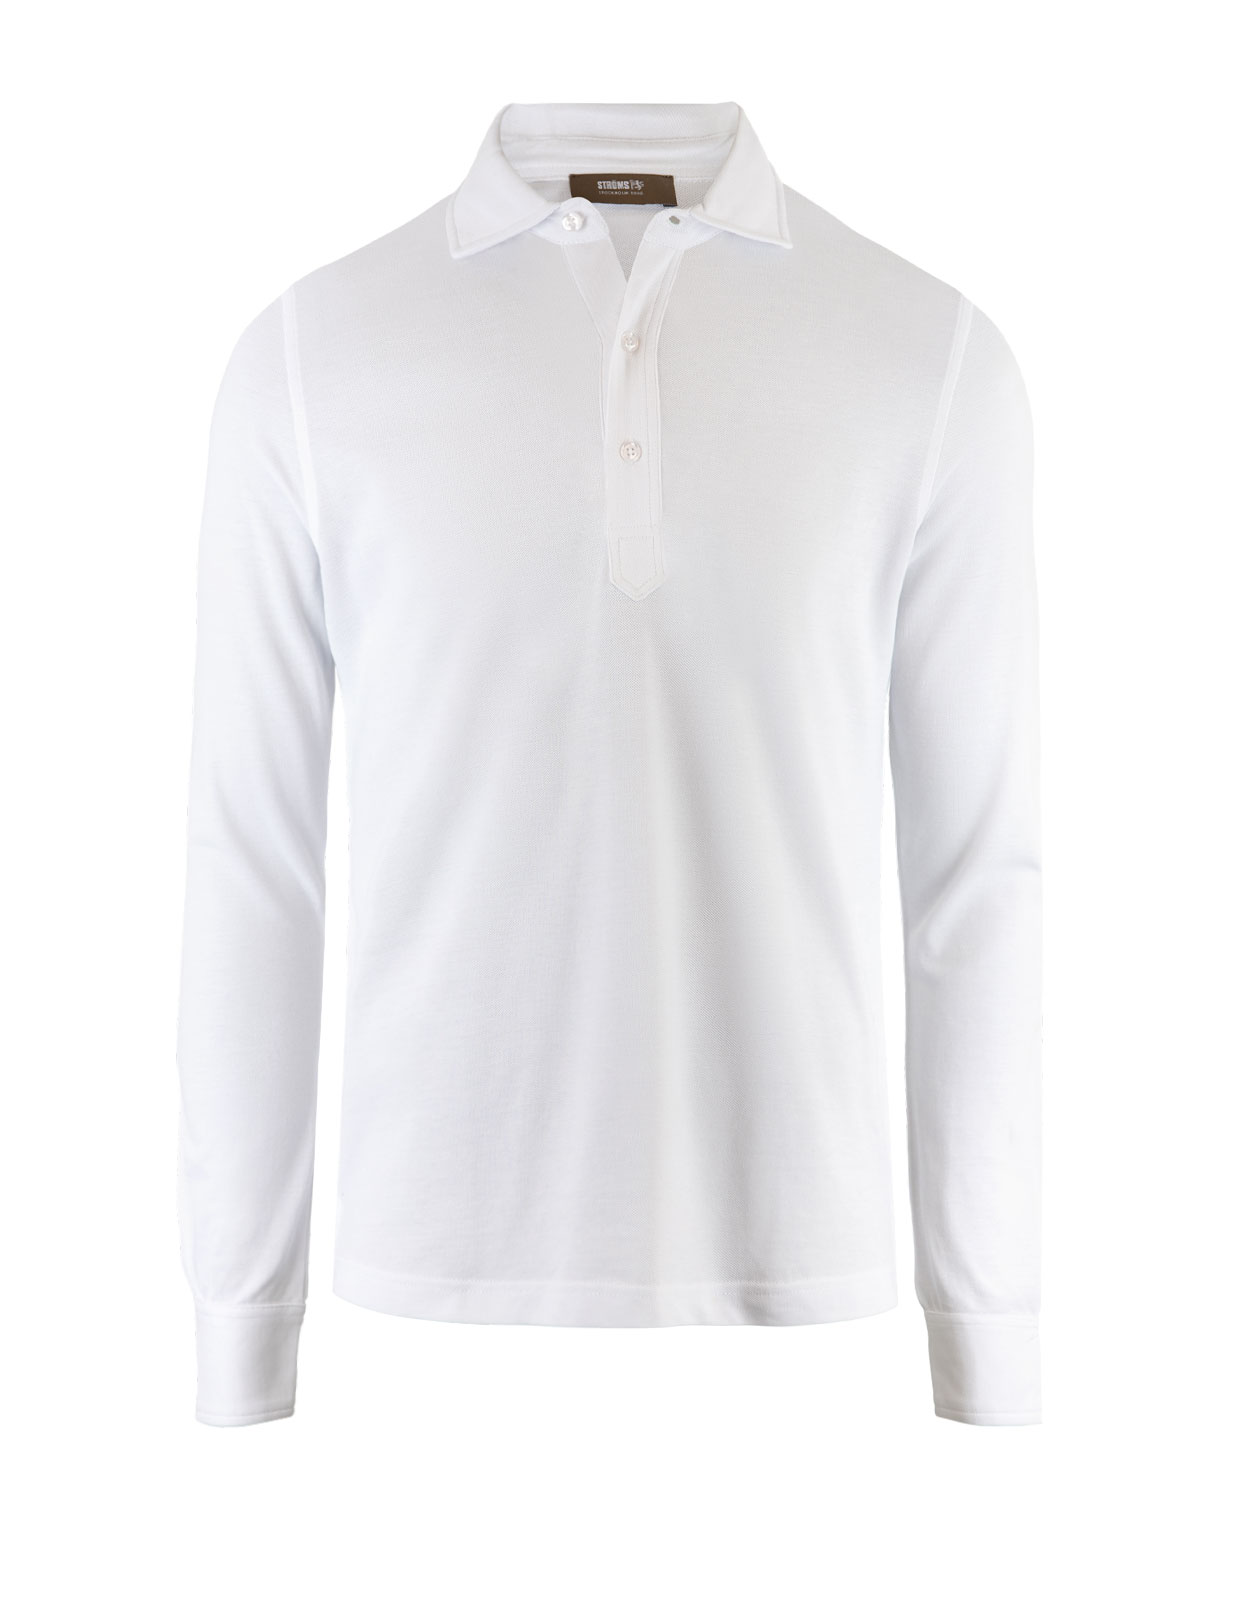 Popover Shirt Cotton Piquet Optic White